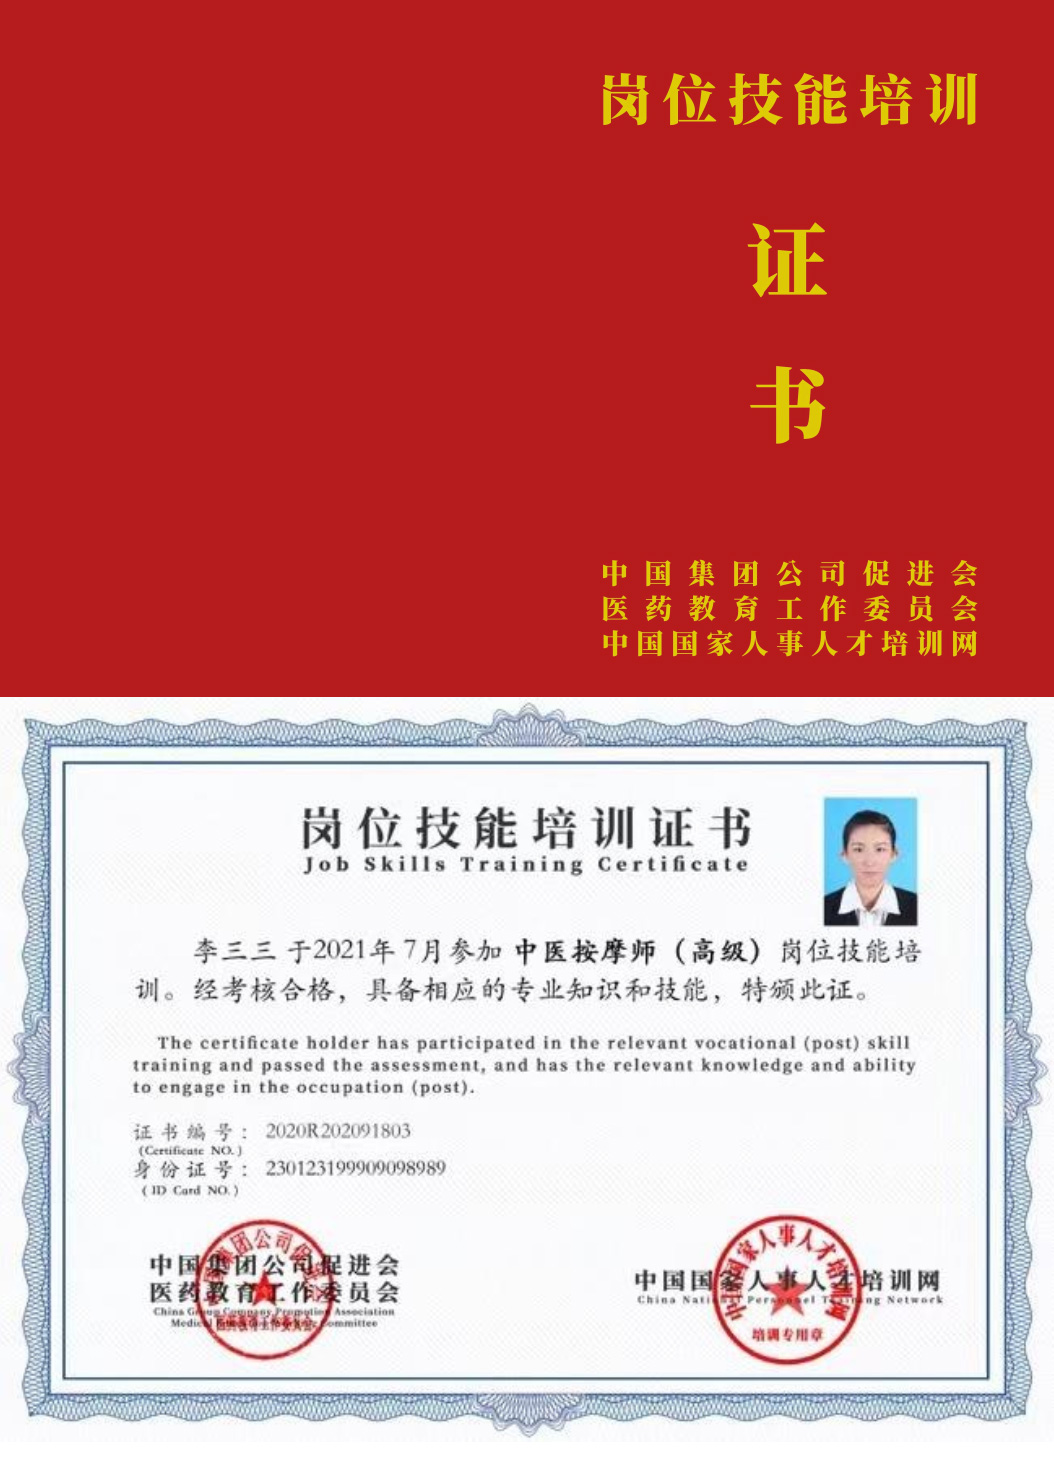 中国国家人事人才培训网 中医灸疗师 岗位技能培训证书